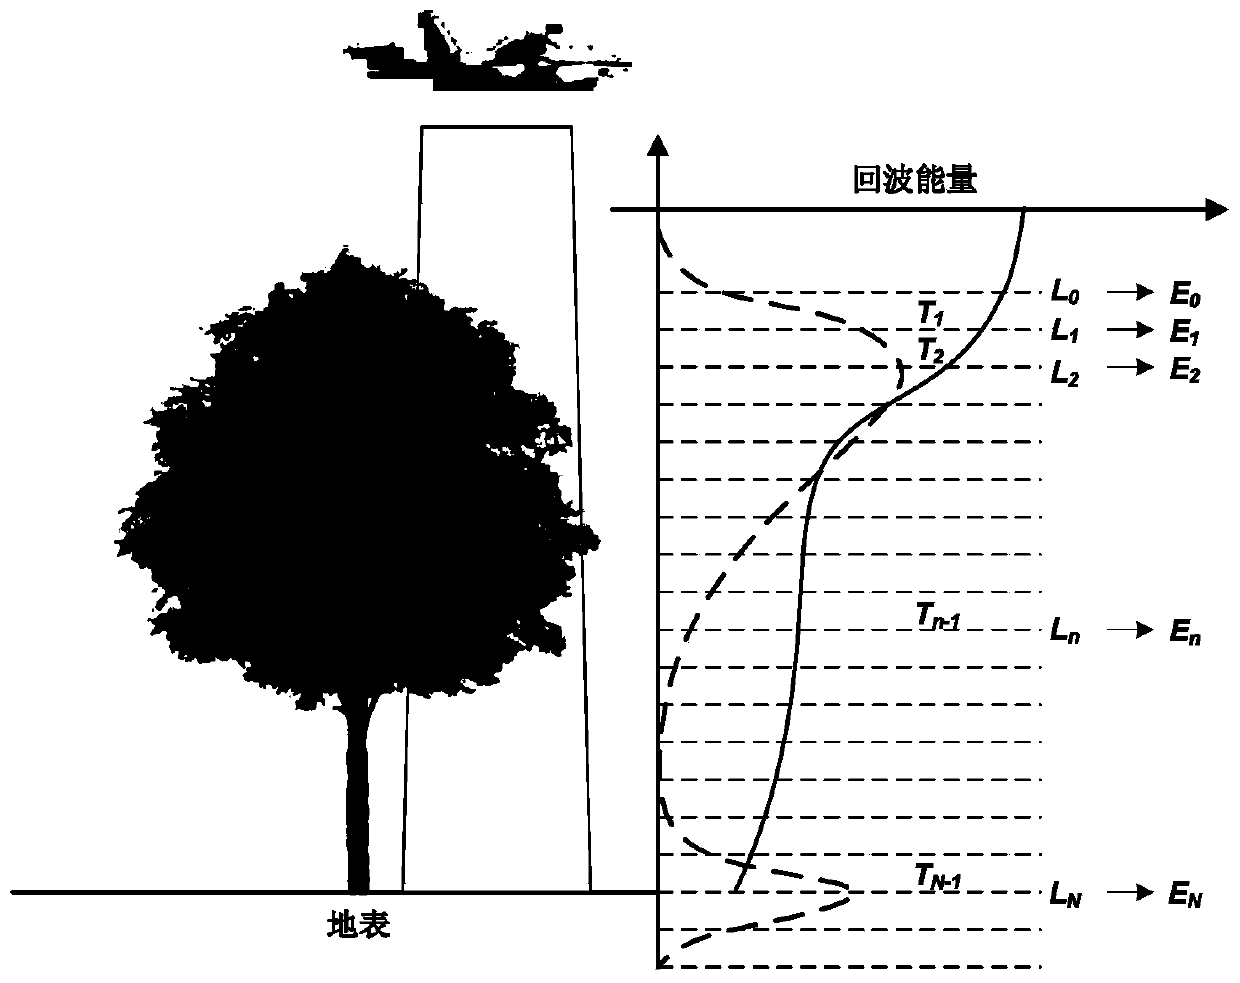 Method for inversing forest canopy aggregation index on basis of full-waveform laser radar data